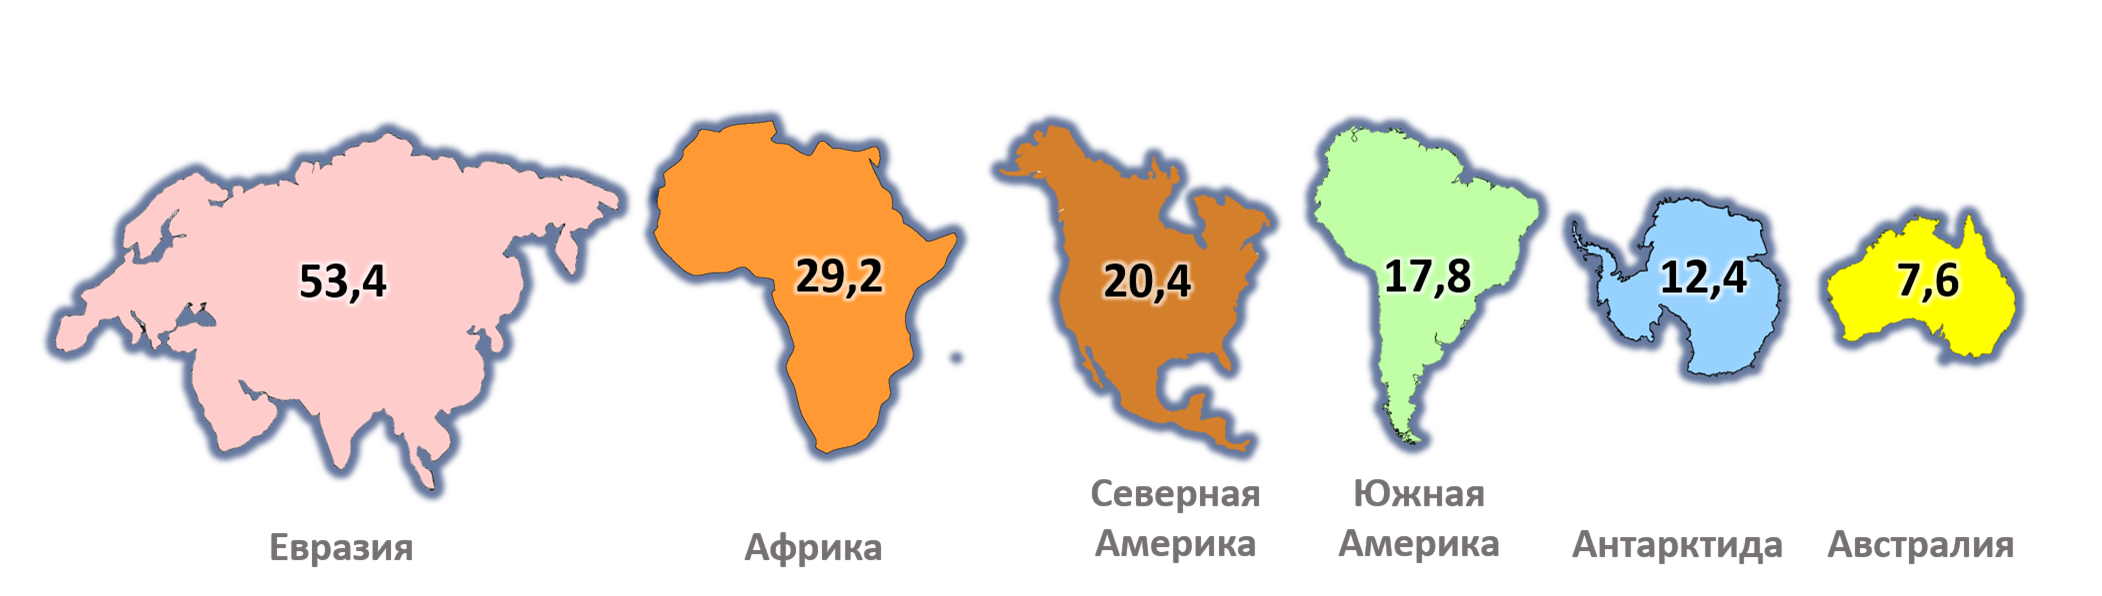 Евразия северный или южный материк. Евразия Африка Северная Америка Южная Америка Австралия Антарктида. Сравнение размеров материков на карте. Размеры материков по площади.